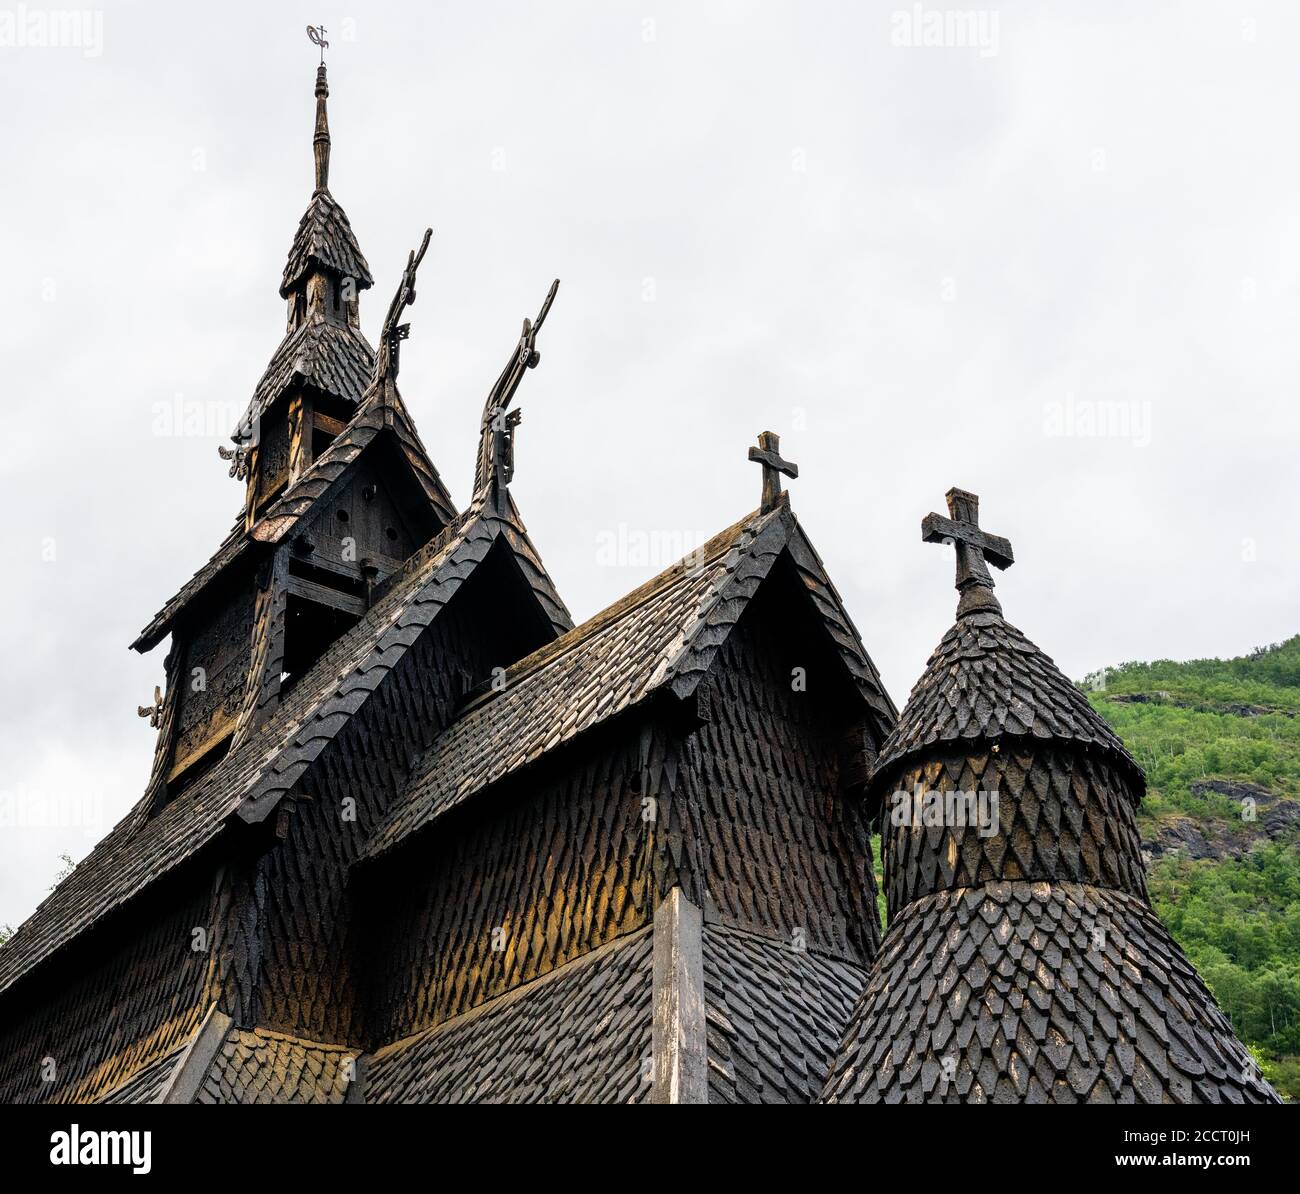 La structure de toit fantastique de Borgund stave église à la tête De Laerdale, dans le centre de la Norvège de Vestland, construite entièrement en bois au xiie siècle Banque D'Images